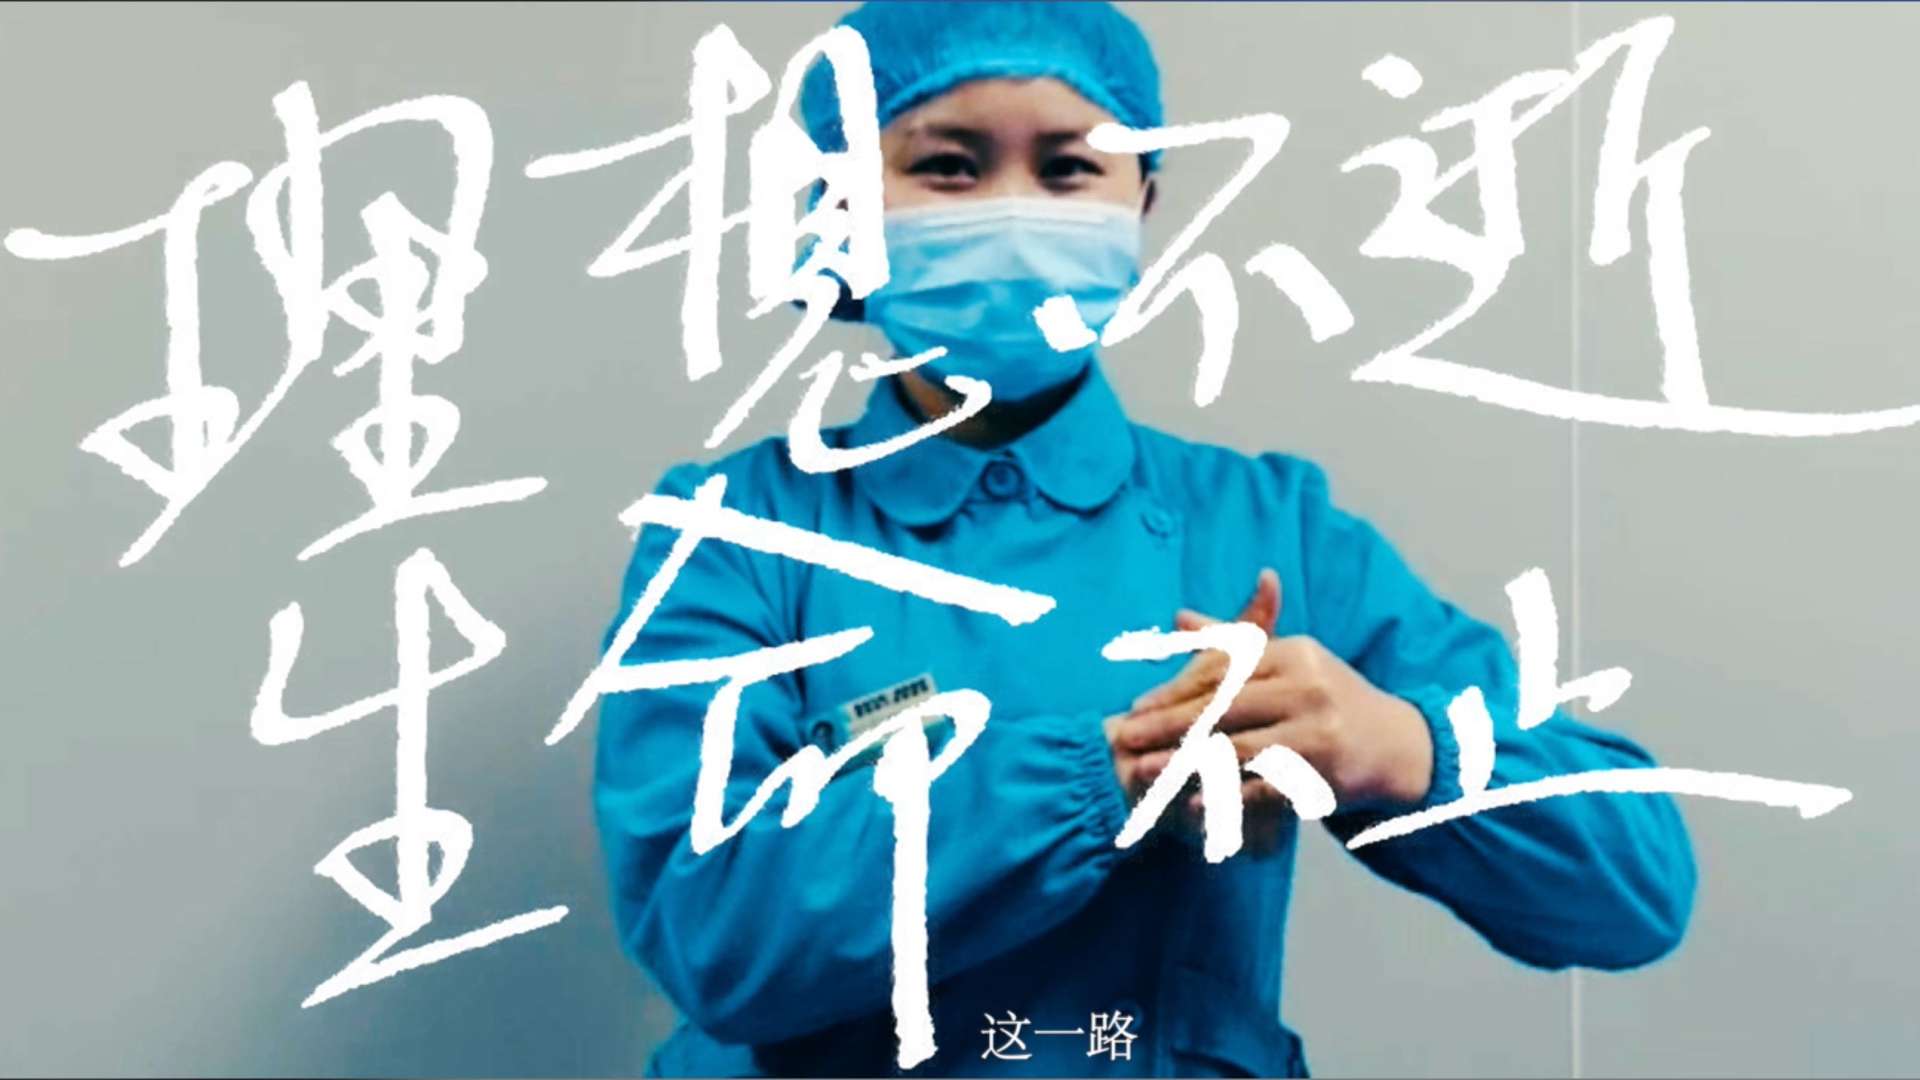 庭浒导演工作室X钧正平工作室 抗疫短片「生命不止」